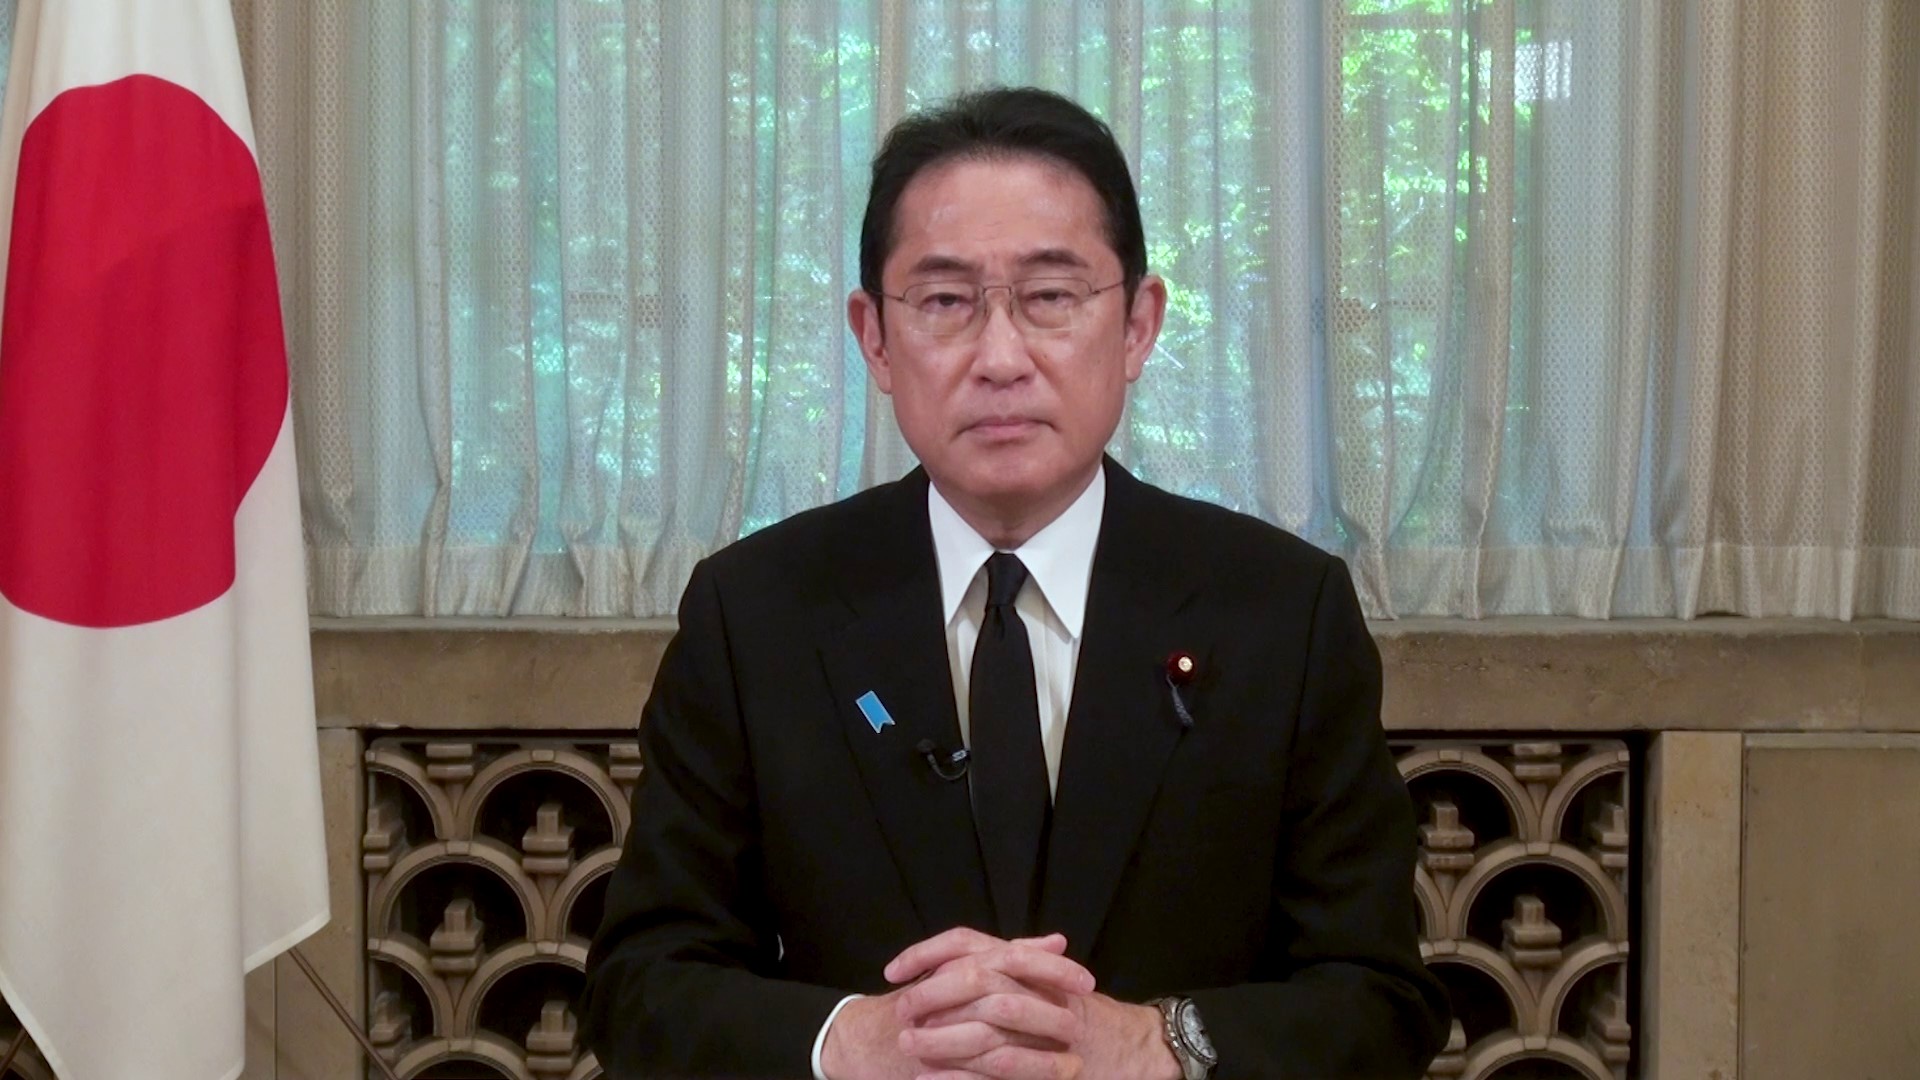 長崎原爆犠牲者慰霊平和祈念式典における岸田総理ビデオメッセージ